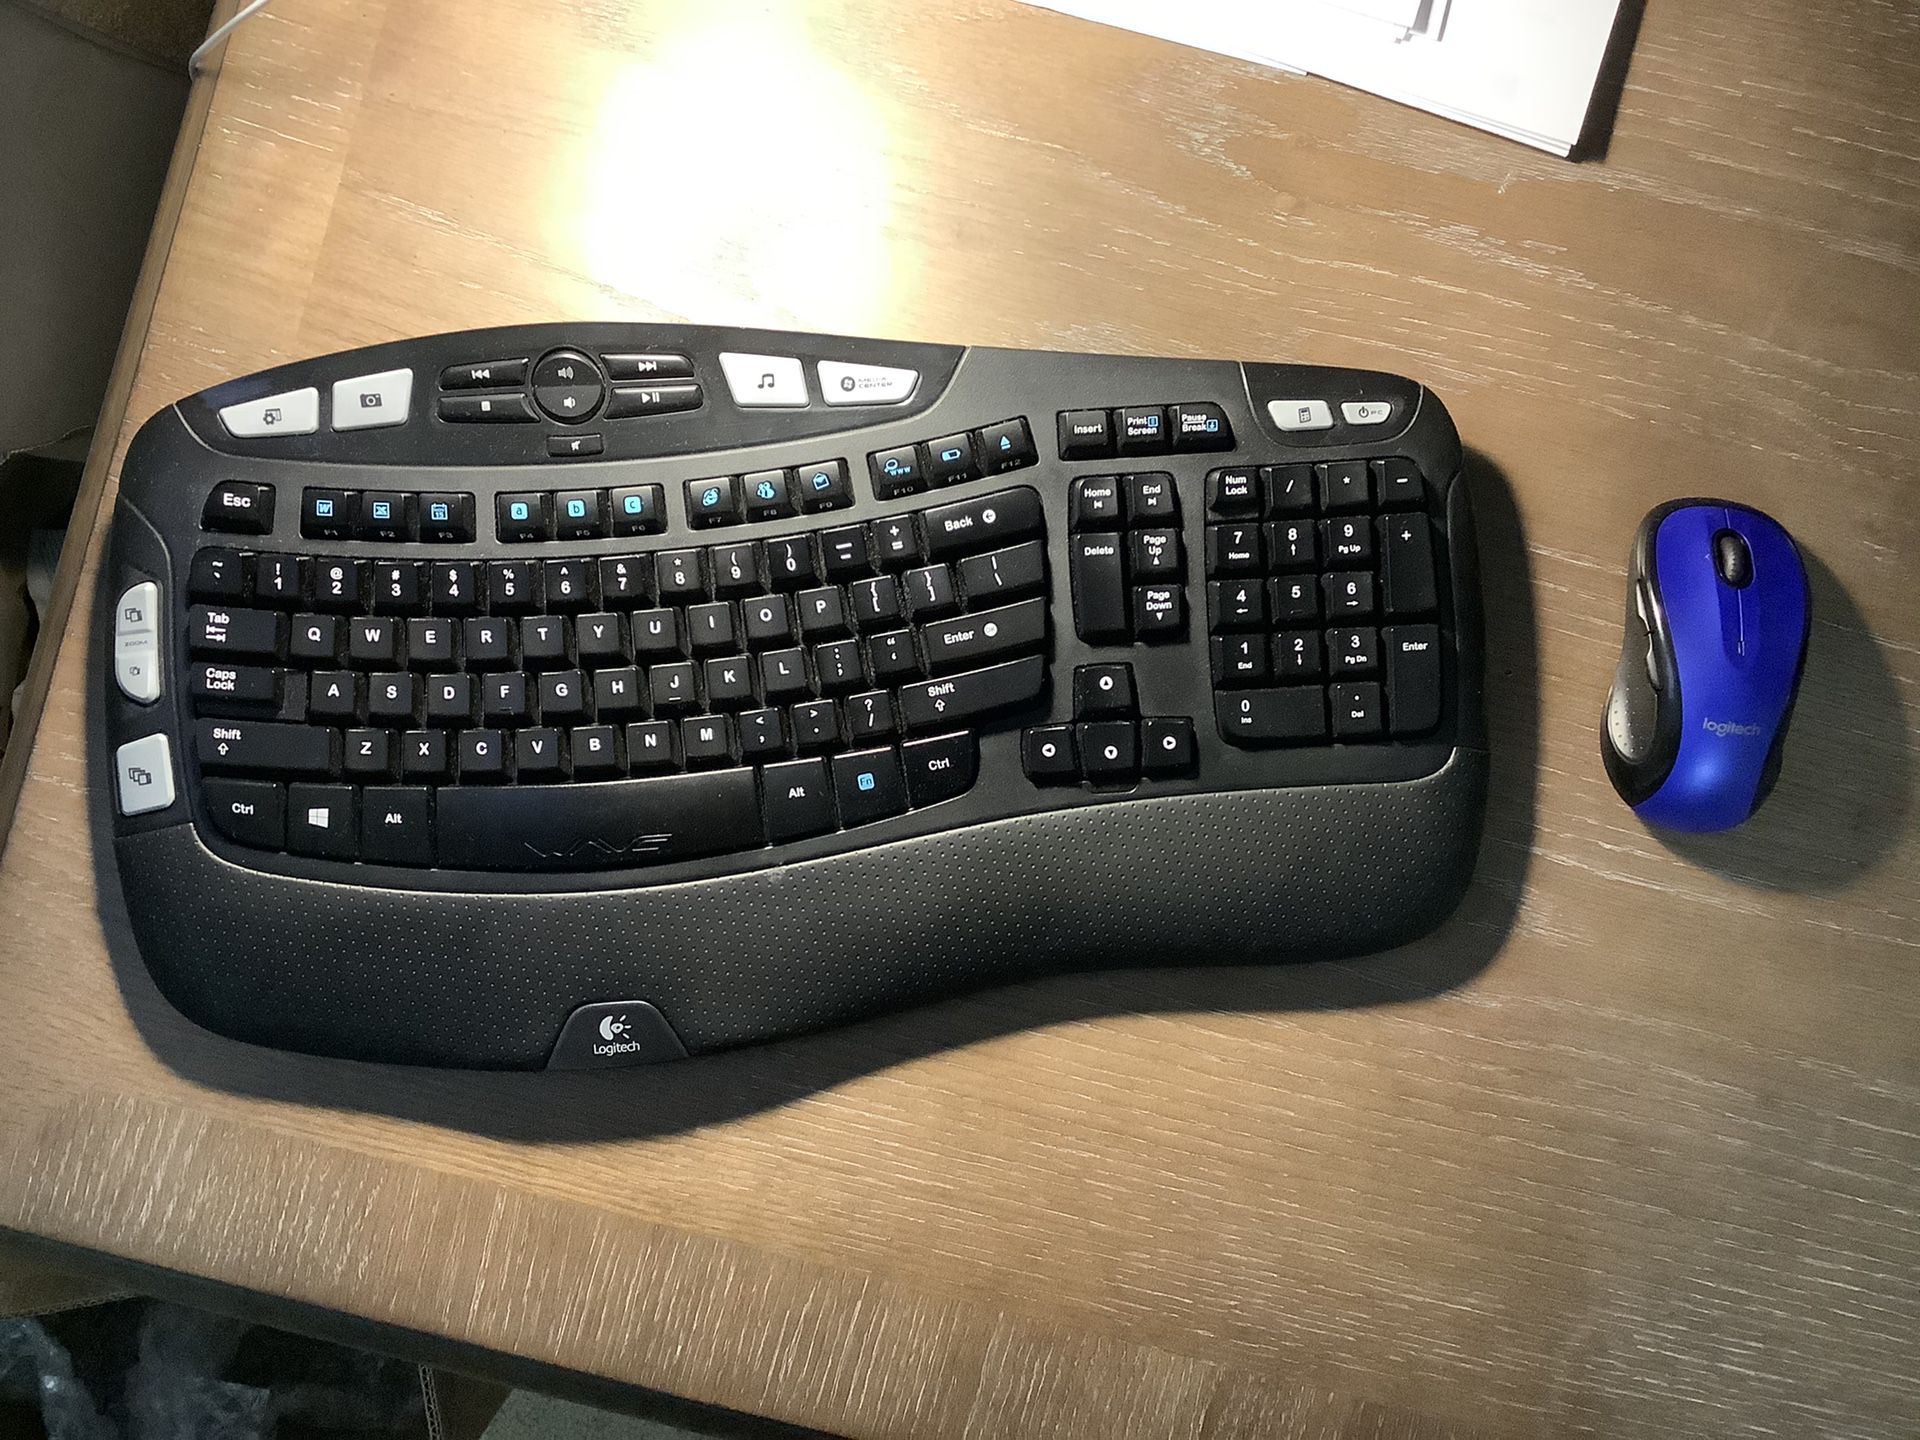 Wireless Bluetooth keyboard and mouse ergonomic k350 Logitech